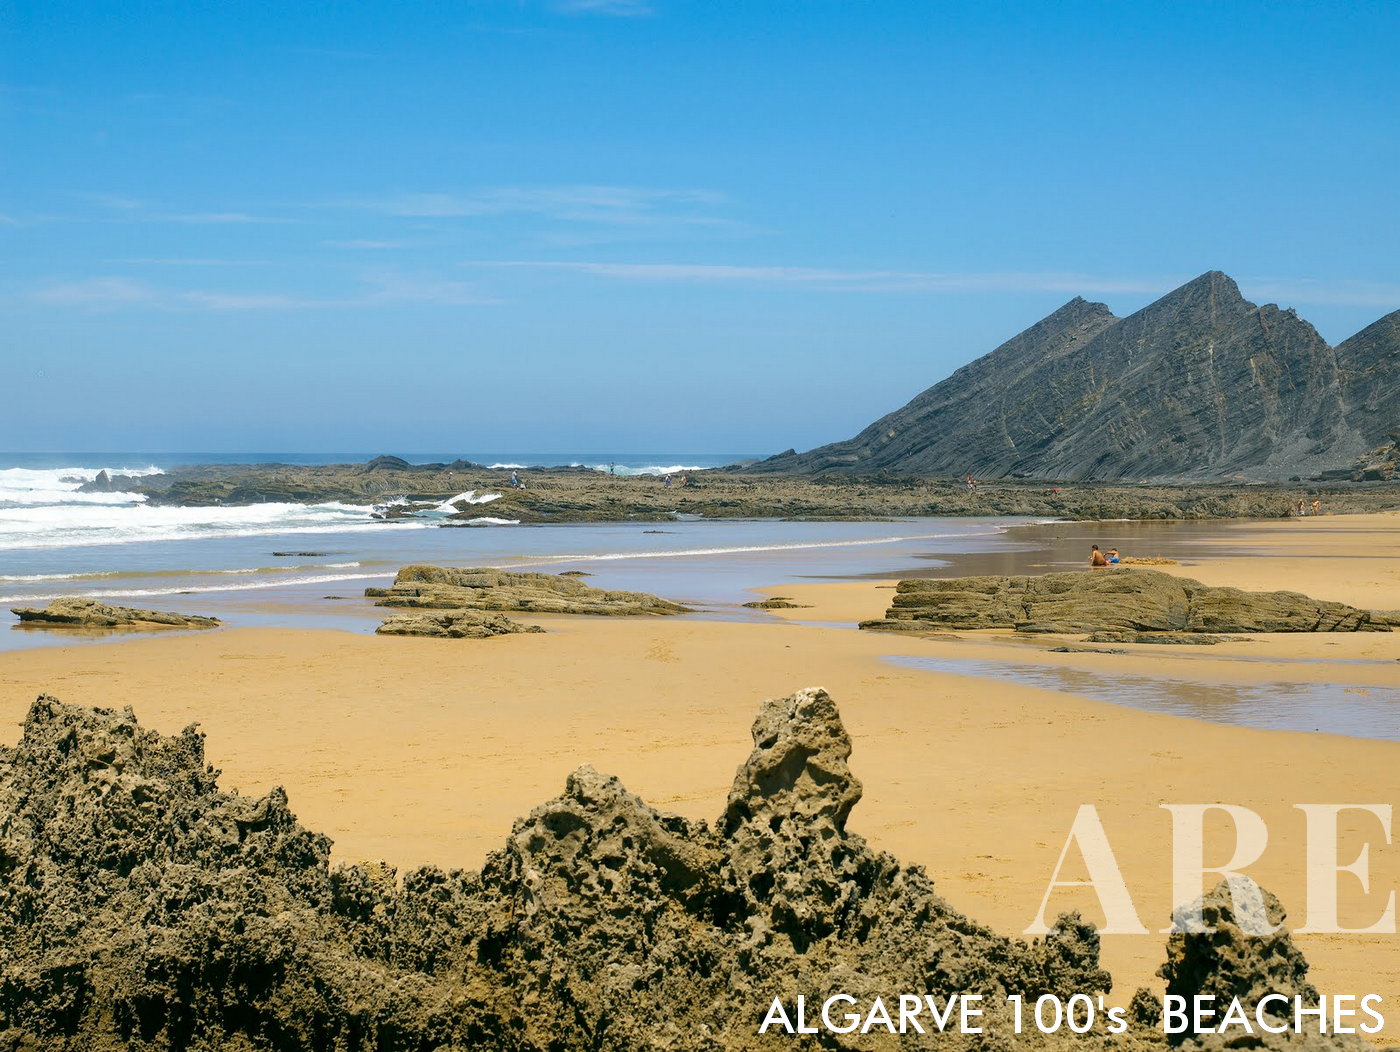 En la playa de Amoreira en Algarve, Portugal, espectaculares acantilados rocosos marchan hacia el océano, su grandeza reflejada en intrigantes formaciones rocosas reveladas en la orilla arenosa durante la marea baja.